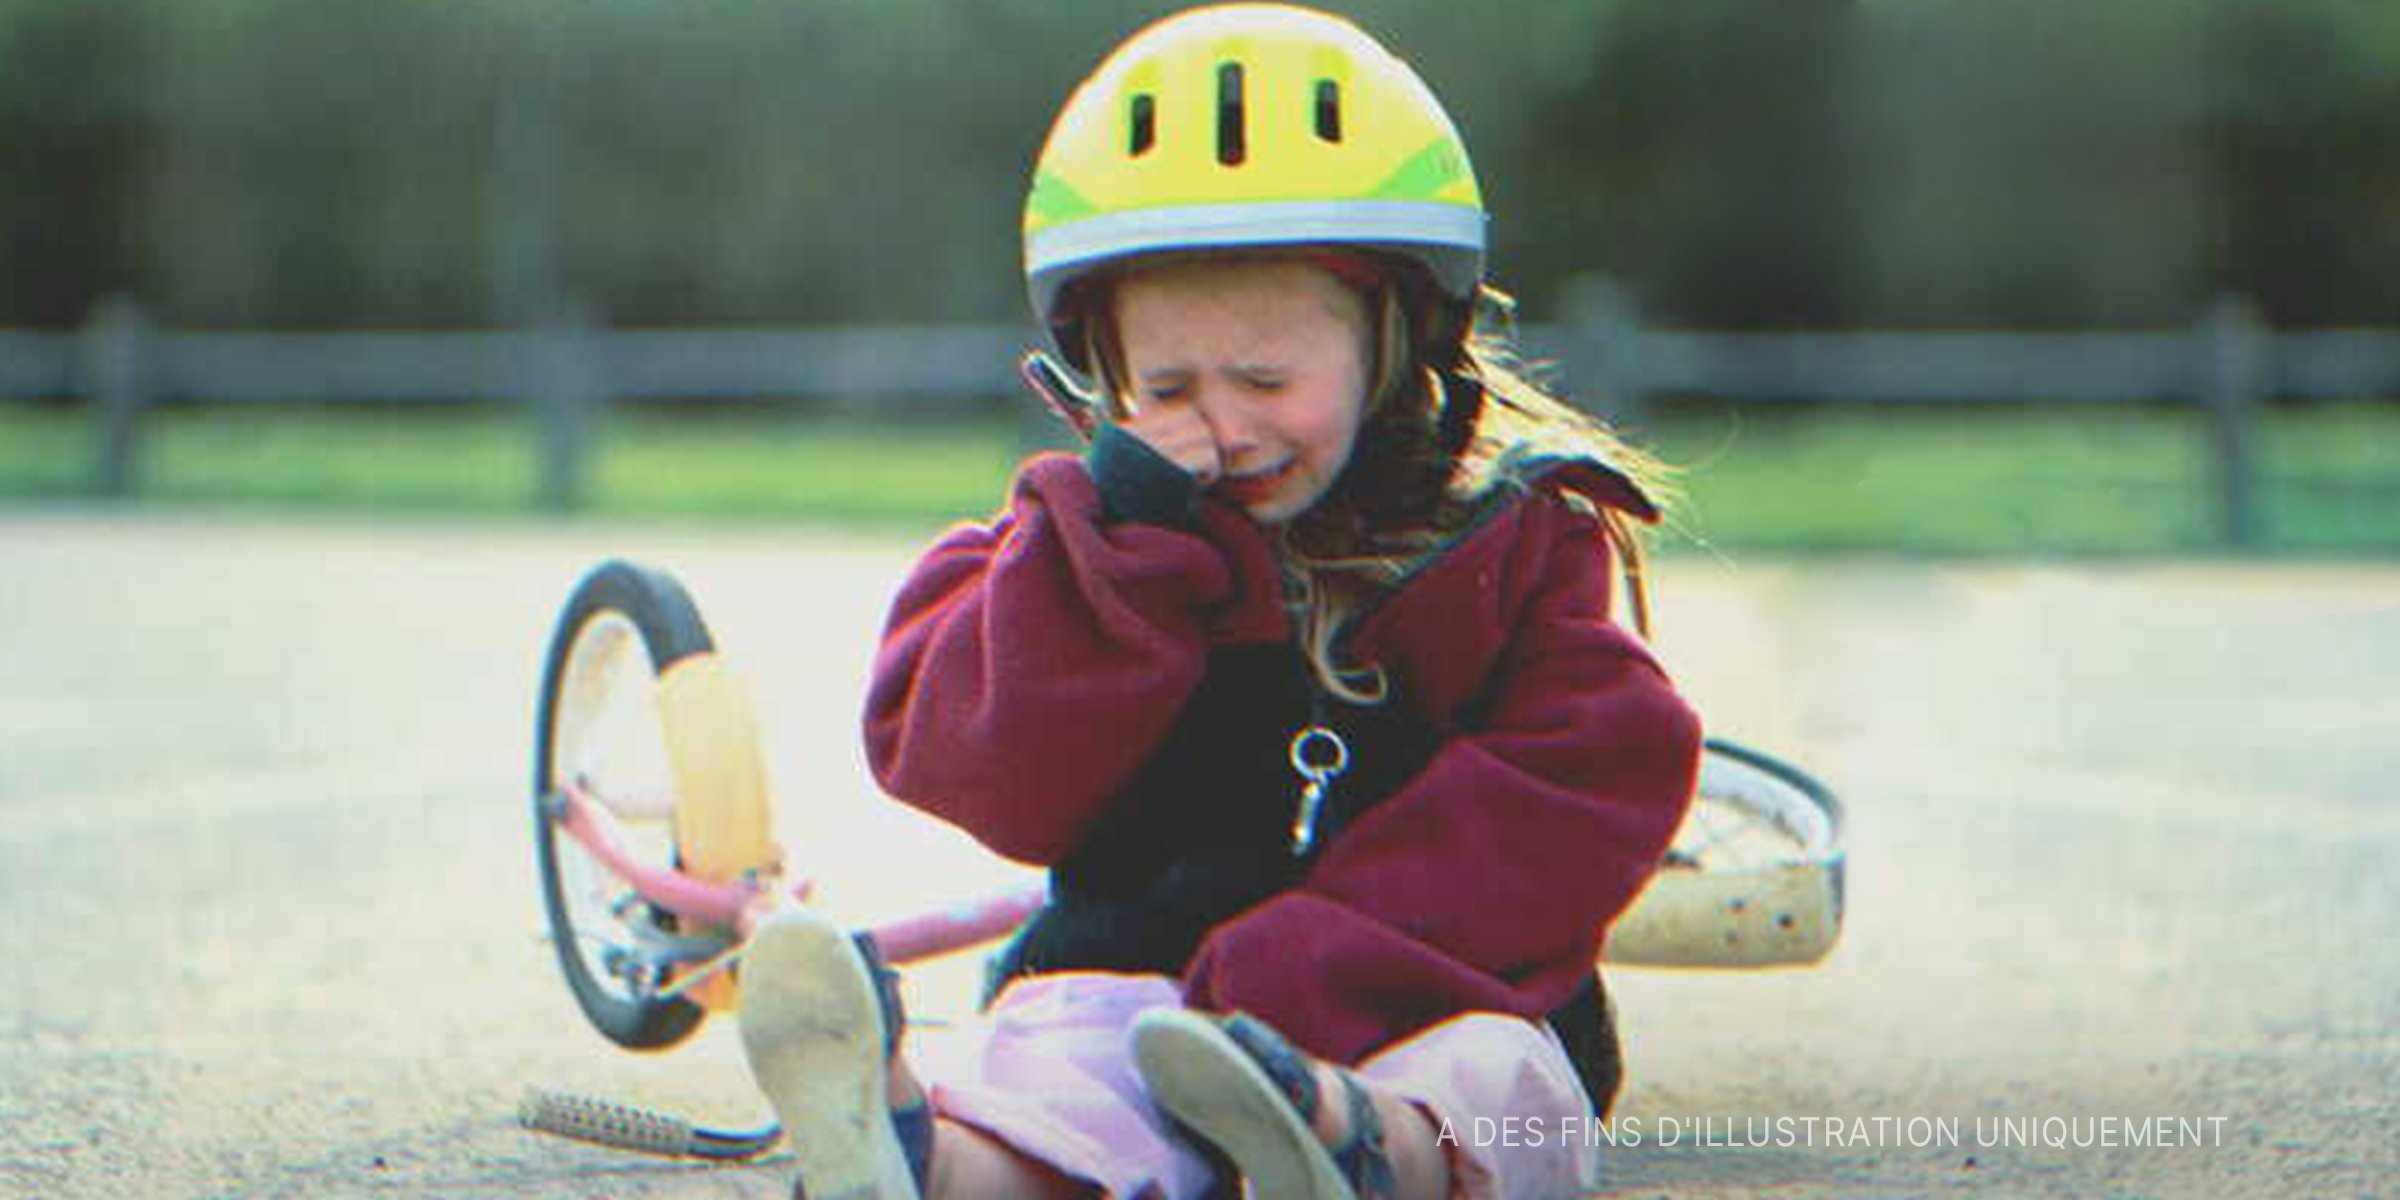 Une petite fille pleure après être tombée de son vélo | Source : Getty Images   